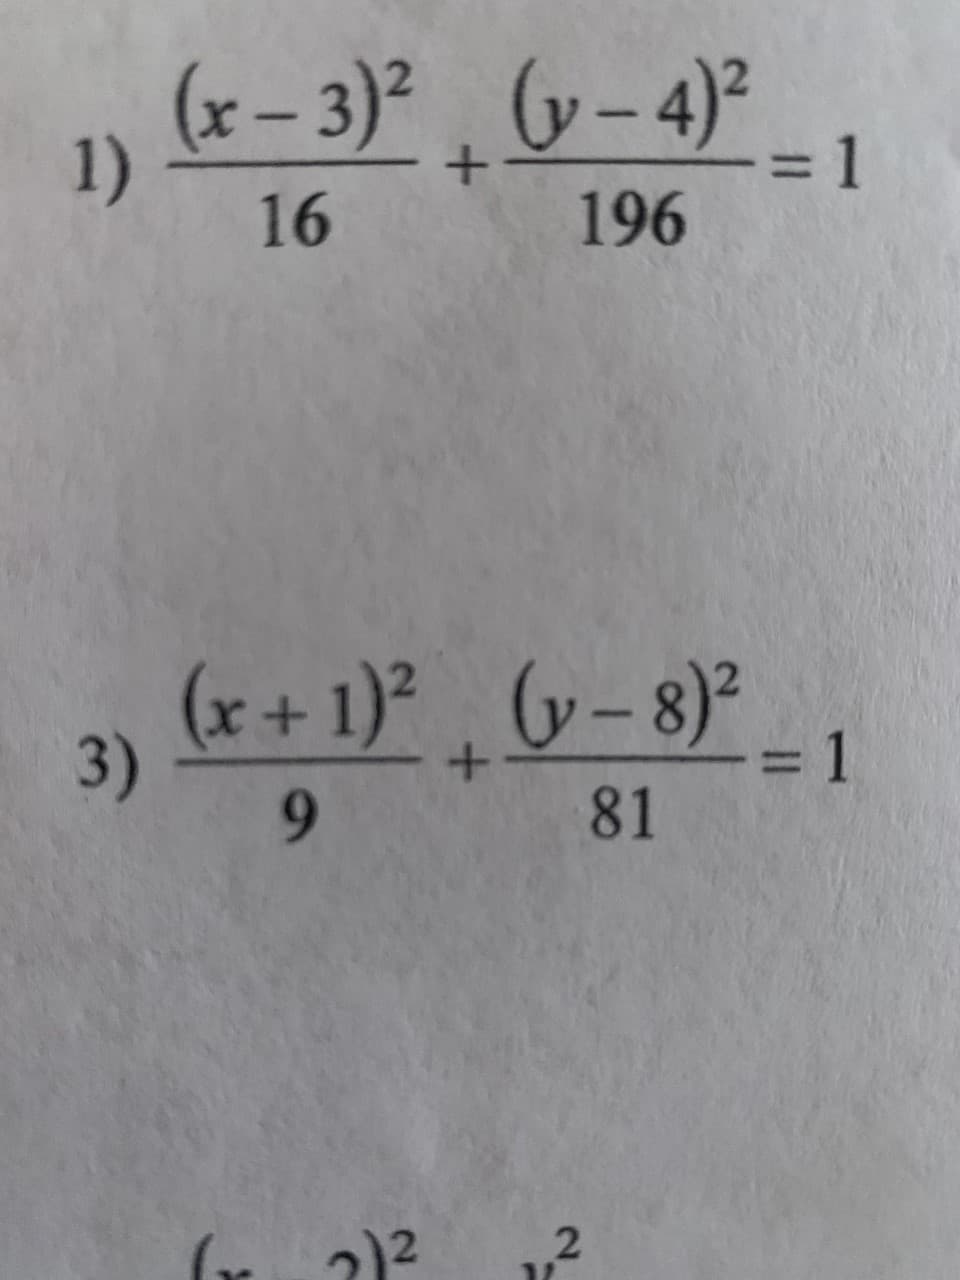 1)
3)
(x-3)²(y-4)²_
+
16
196
(x + 1)² (y-8)²
+
9
81
2)²
2
= 1
= 1